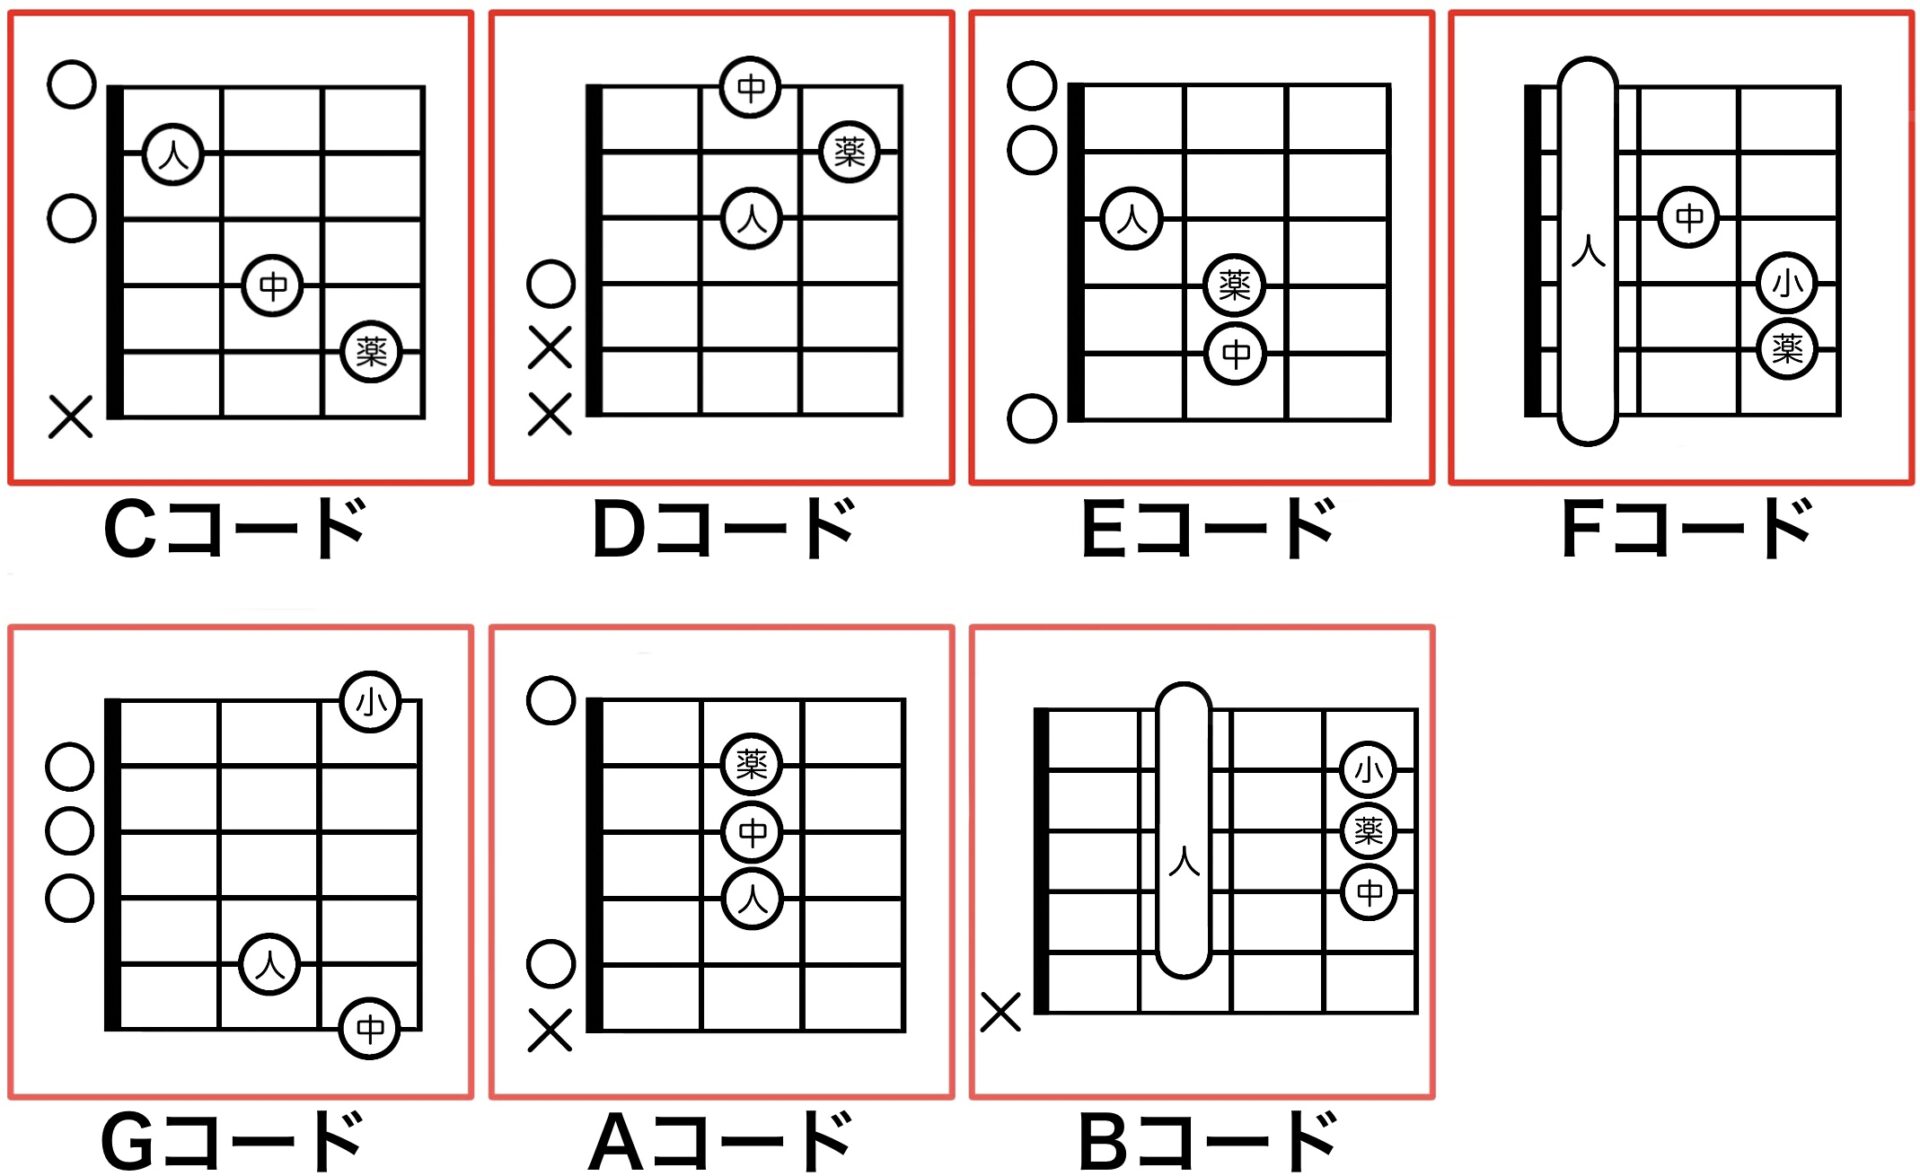 初心者が覚えるギターコードは5種類 コードのイメージを掴もう ギタラボ